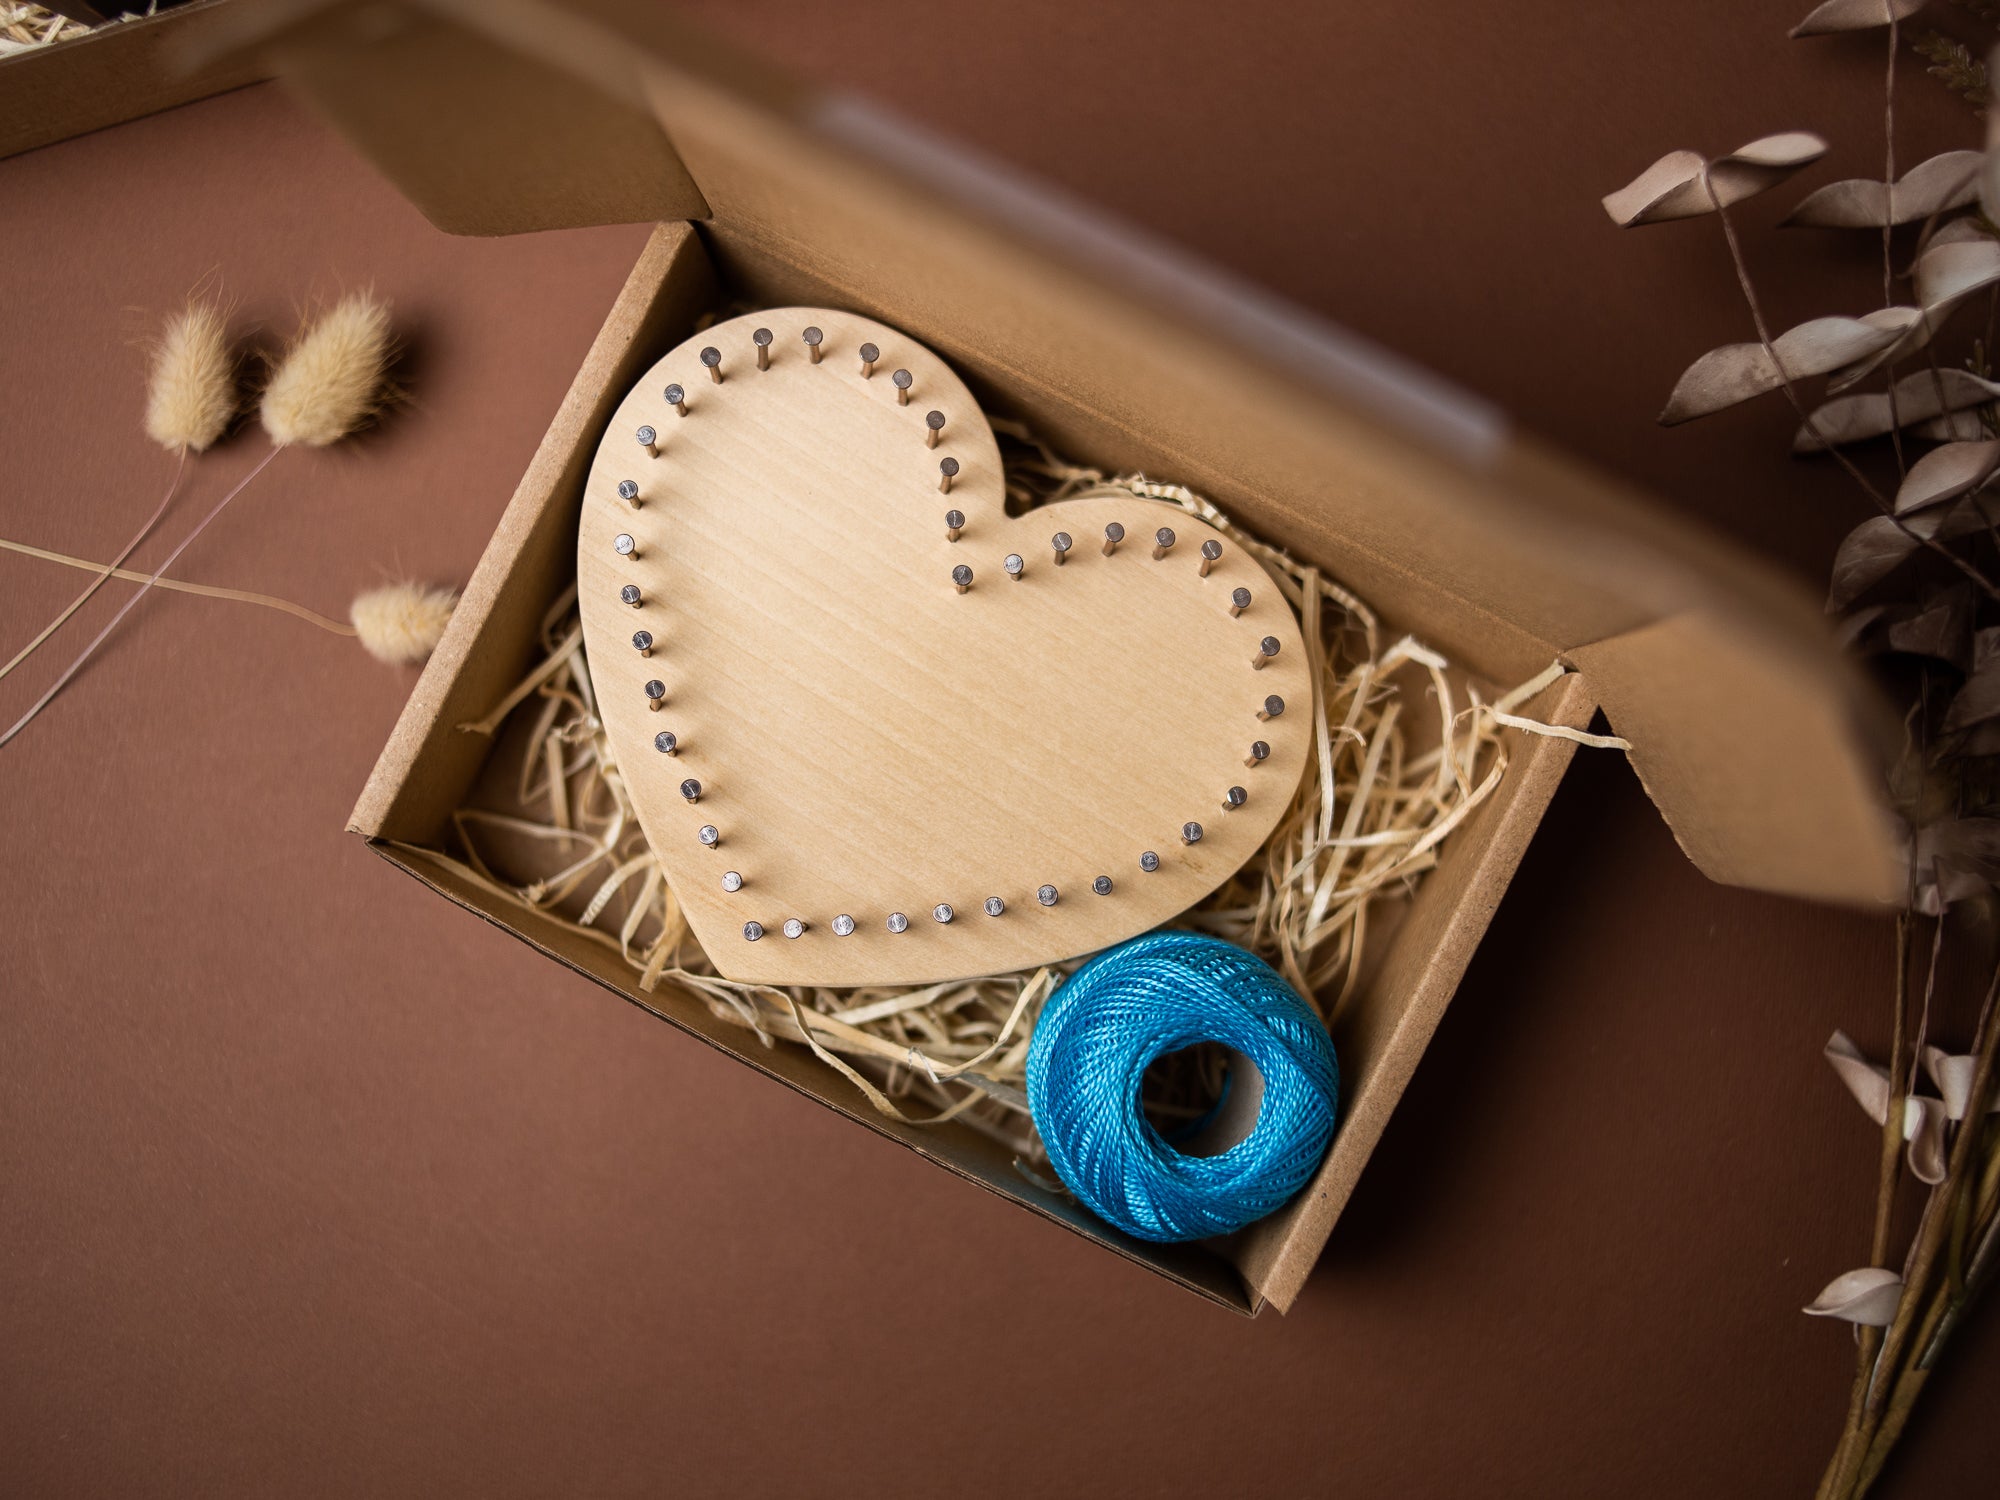 String Art - DIY Heart